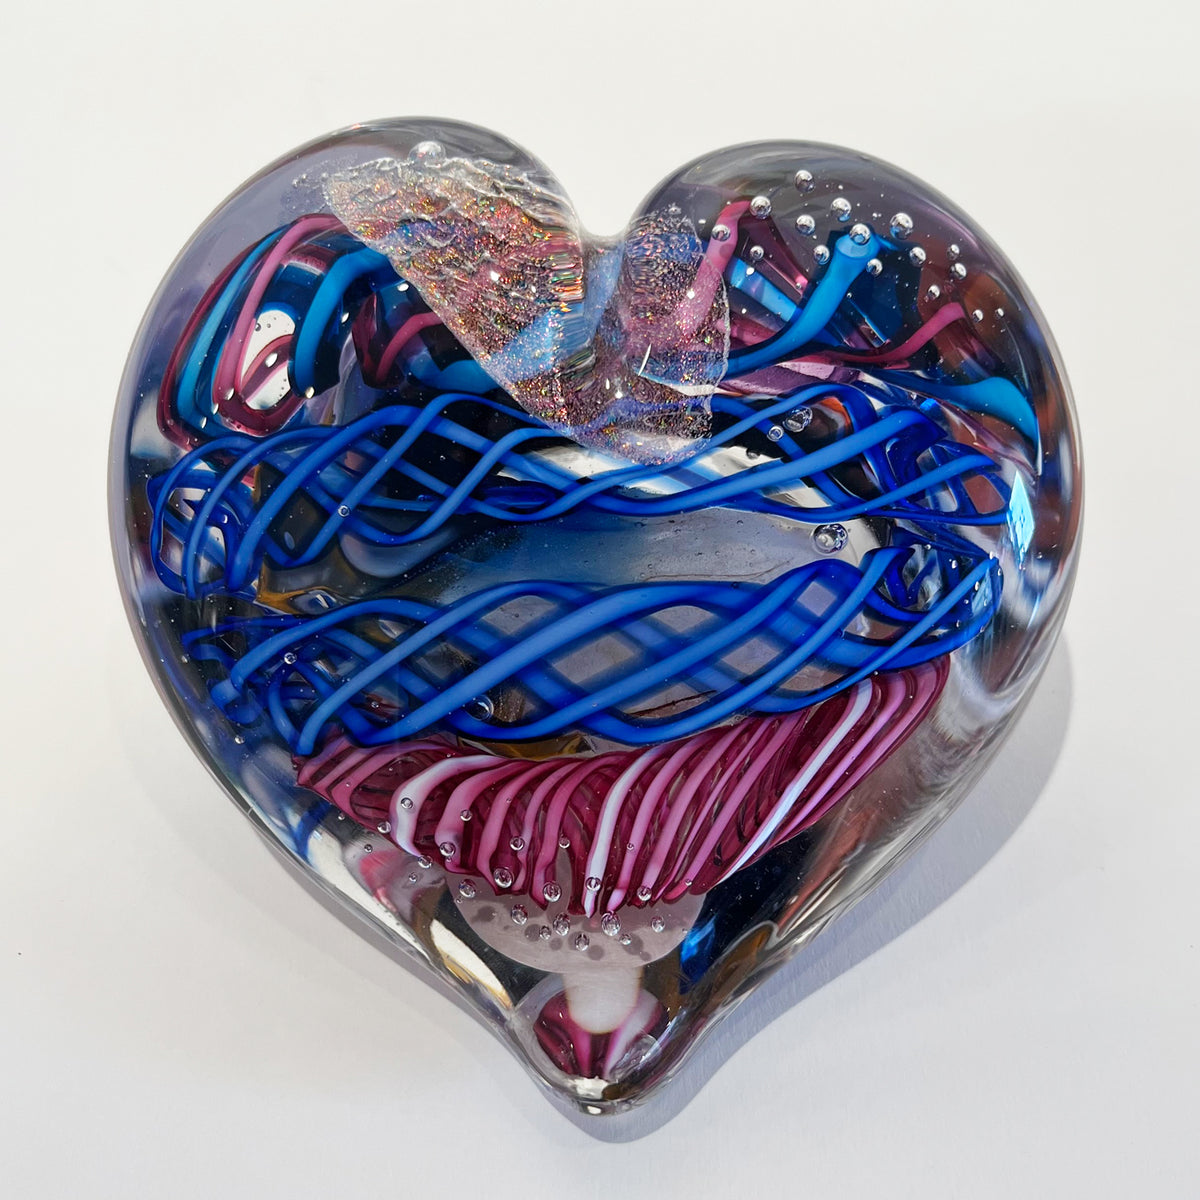 Alyssa Getz & Tommy Cudmore - Large Heart, 3.5" x 5" x 5"